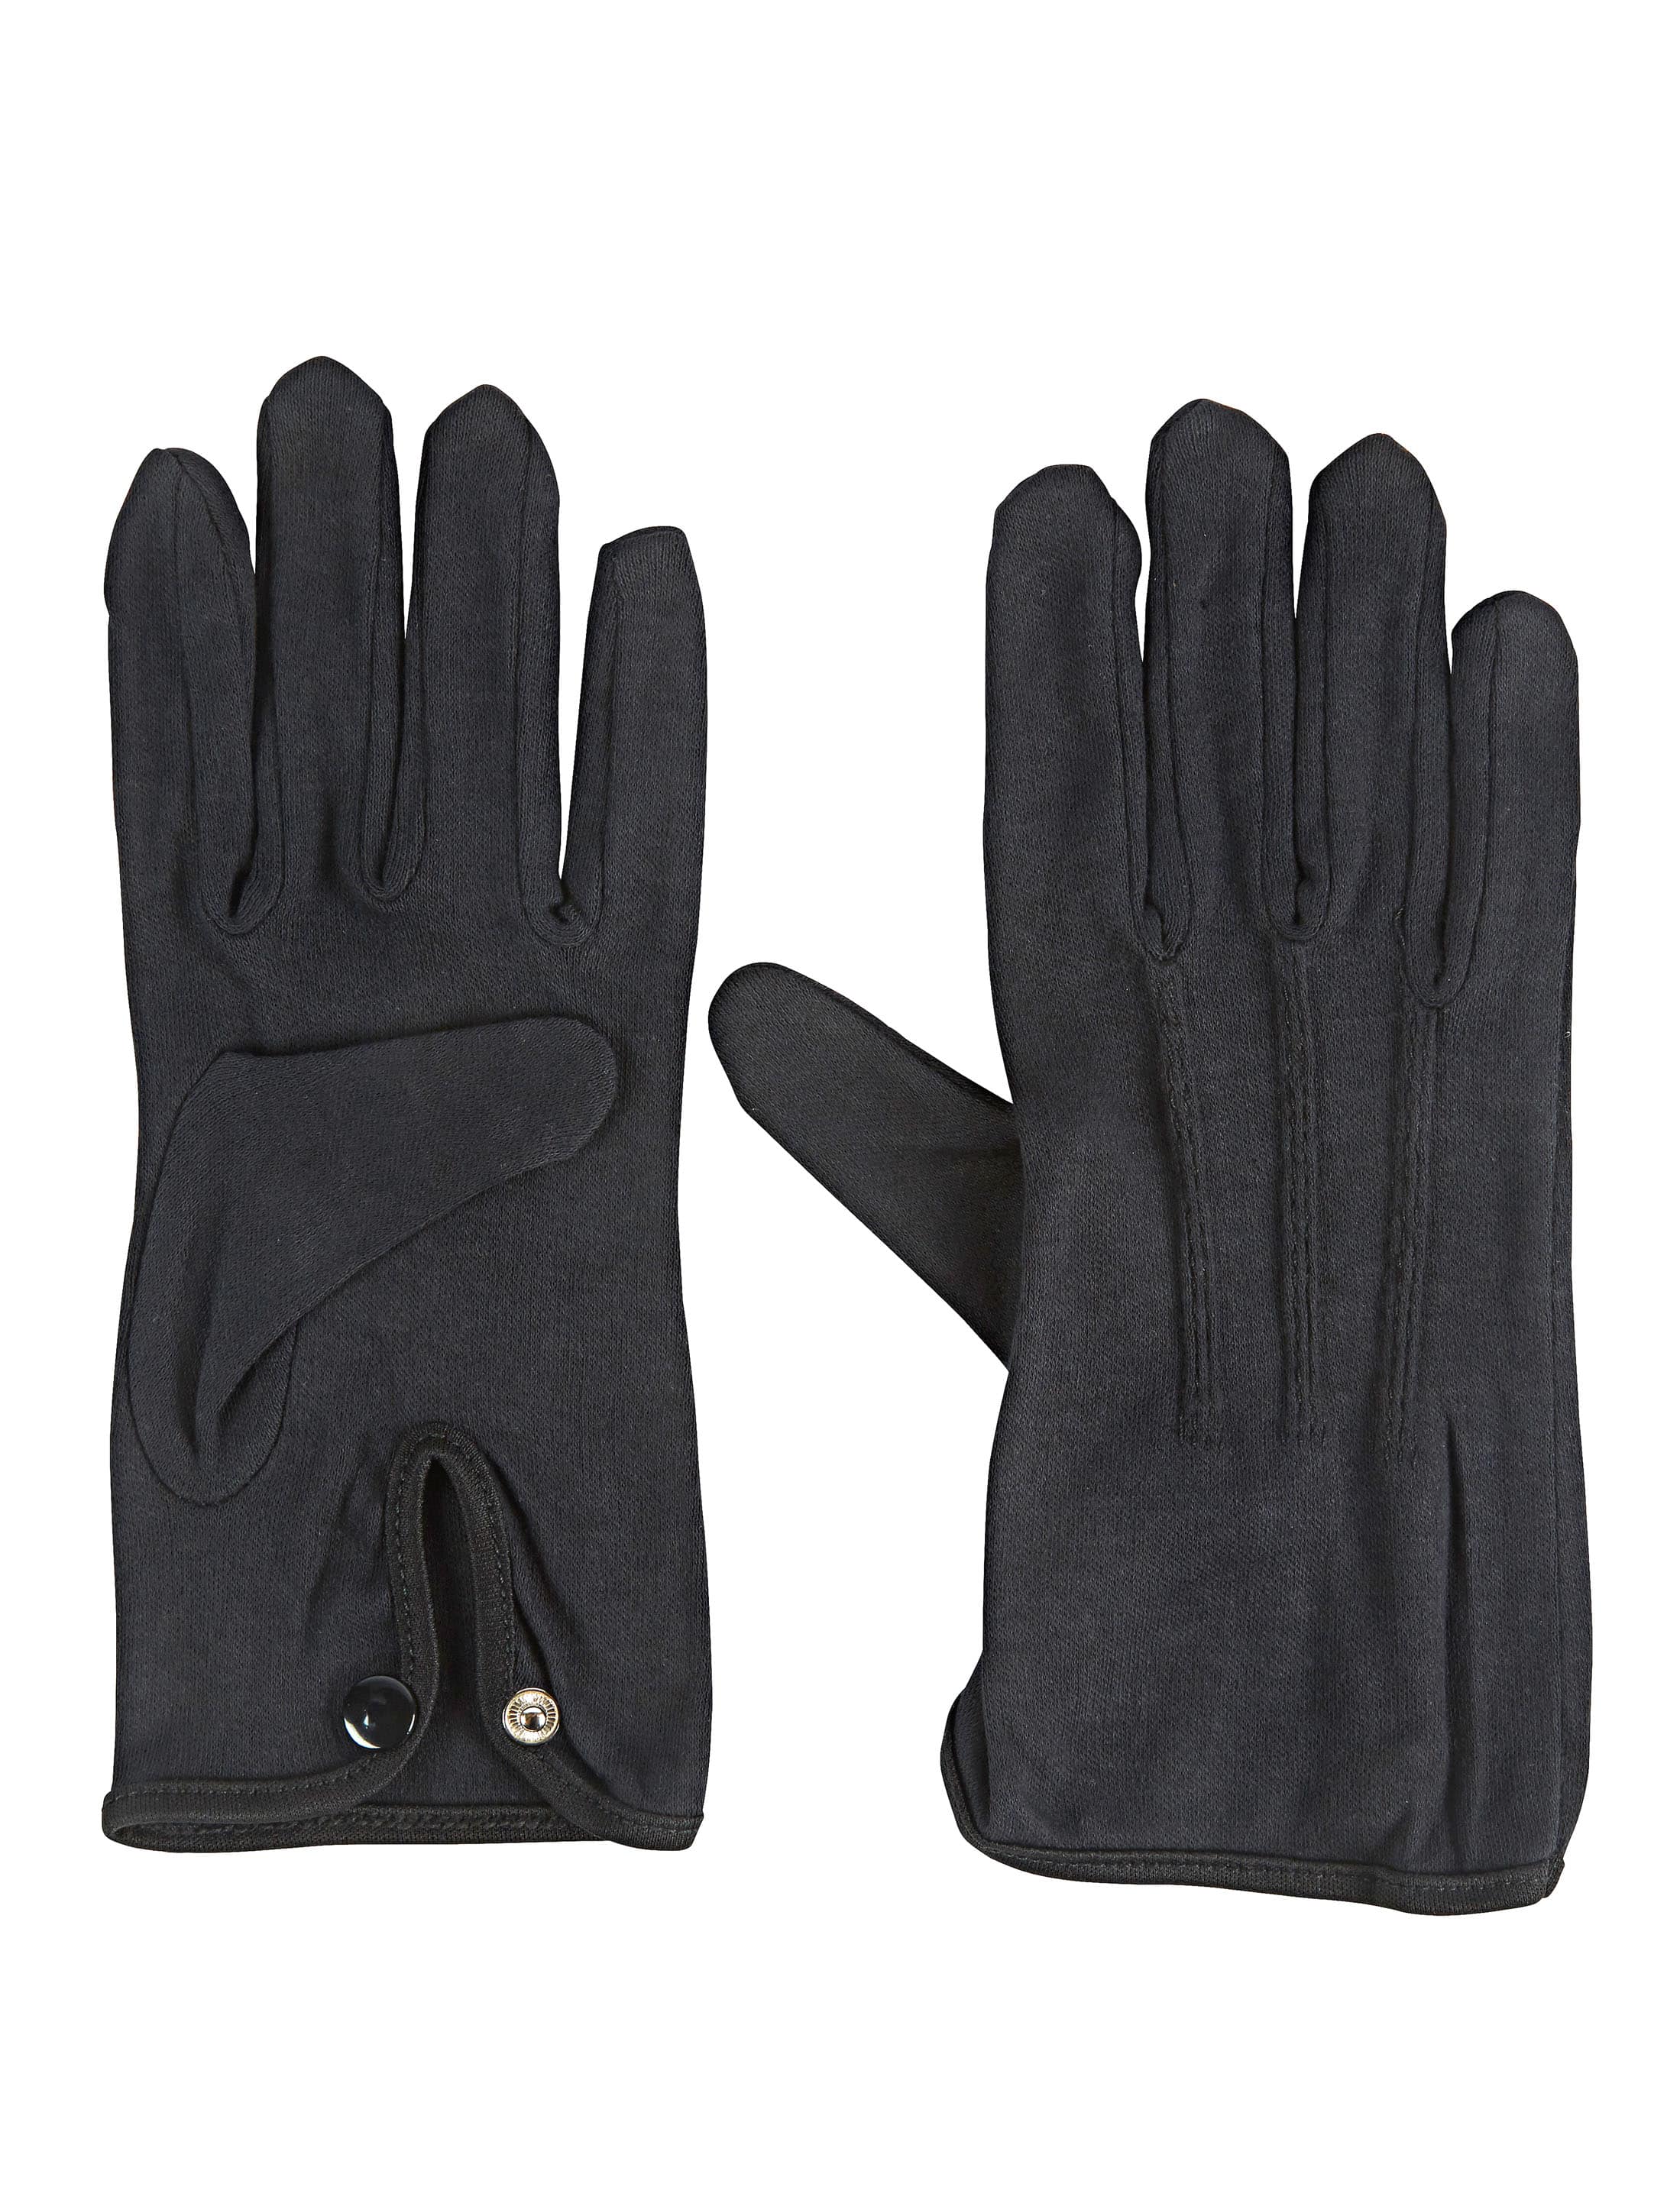 Handschuhe Baumwolle mit Knopf schwarz L